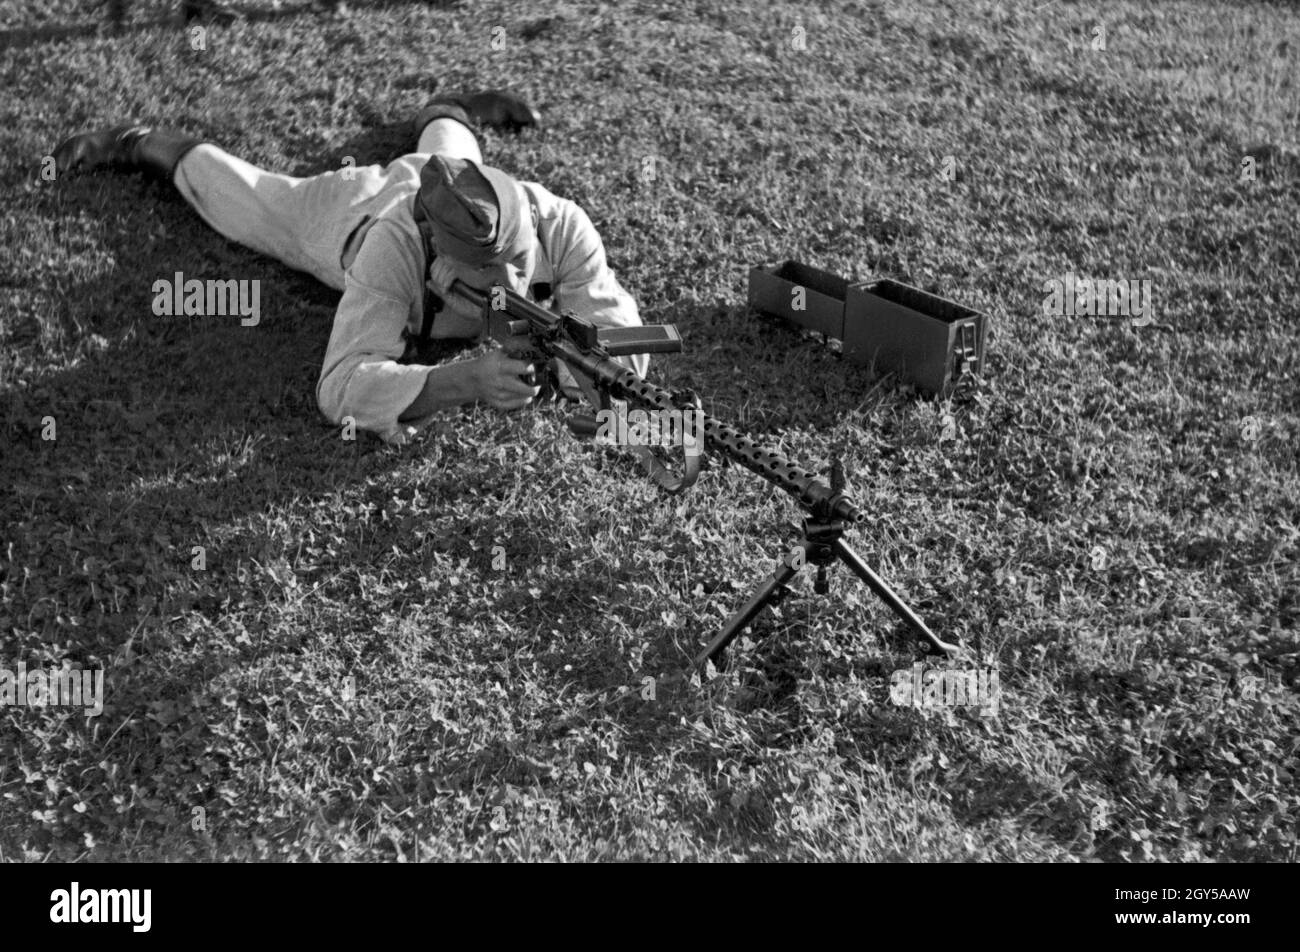 Rekrut der Flieger Ausbildungsstelle Schönwalde am Übungsschießen mit dem Maschinengewehr 34 MG, Deutschland 1930 er Jahre. L'instruction des recrues avec une mitrailleuse MG 34, Allemagne 1930. Banque D'Images